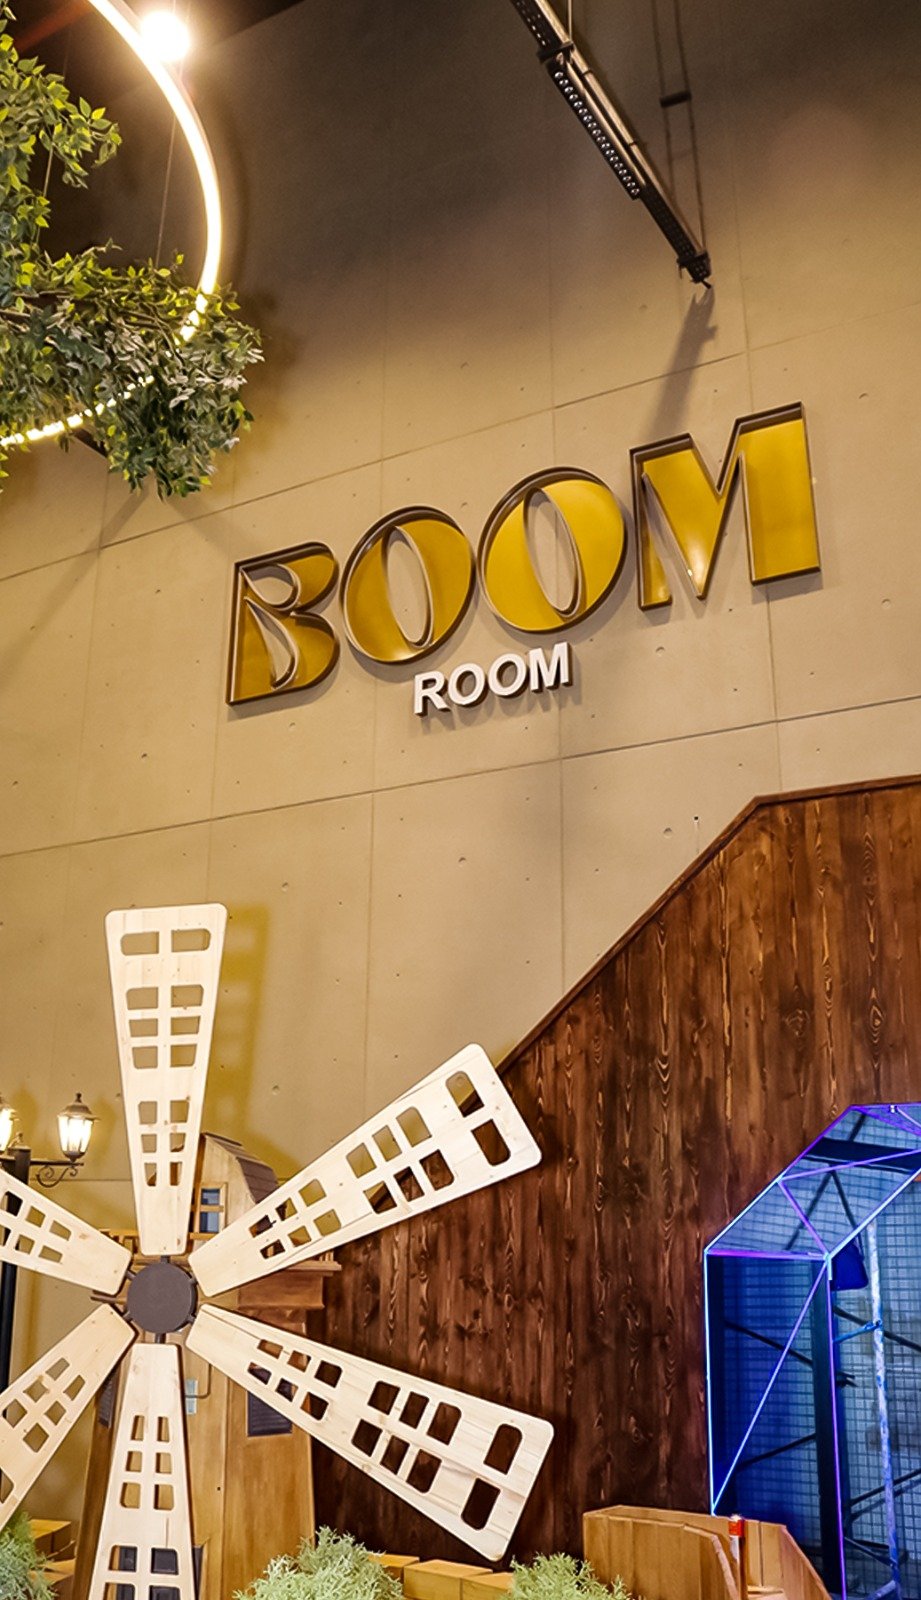 إنطلاق أول مركز ترفيهى اجتماعى من نوعه بمصر Boom Room فى اوبن آير مول مدينتى (5)